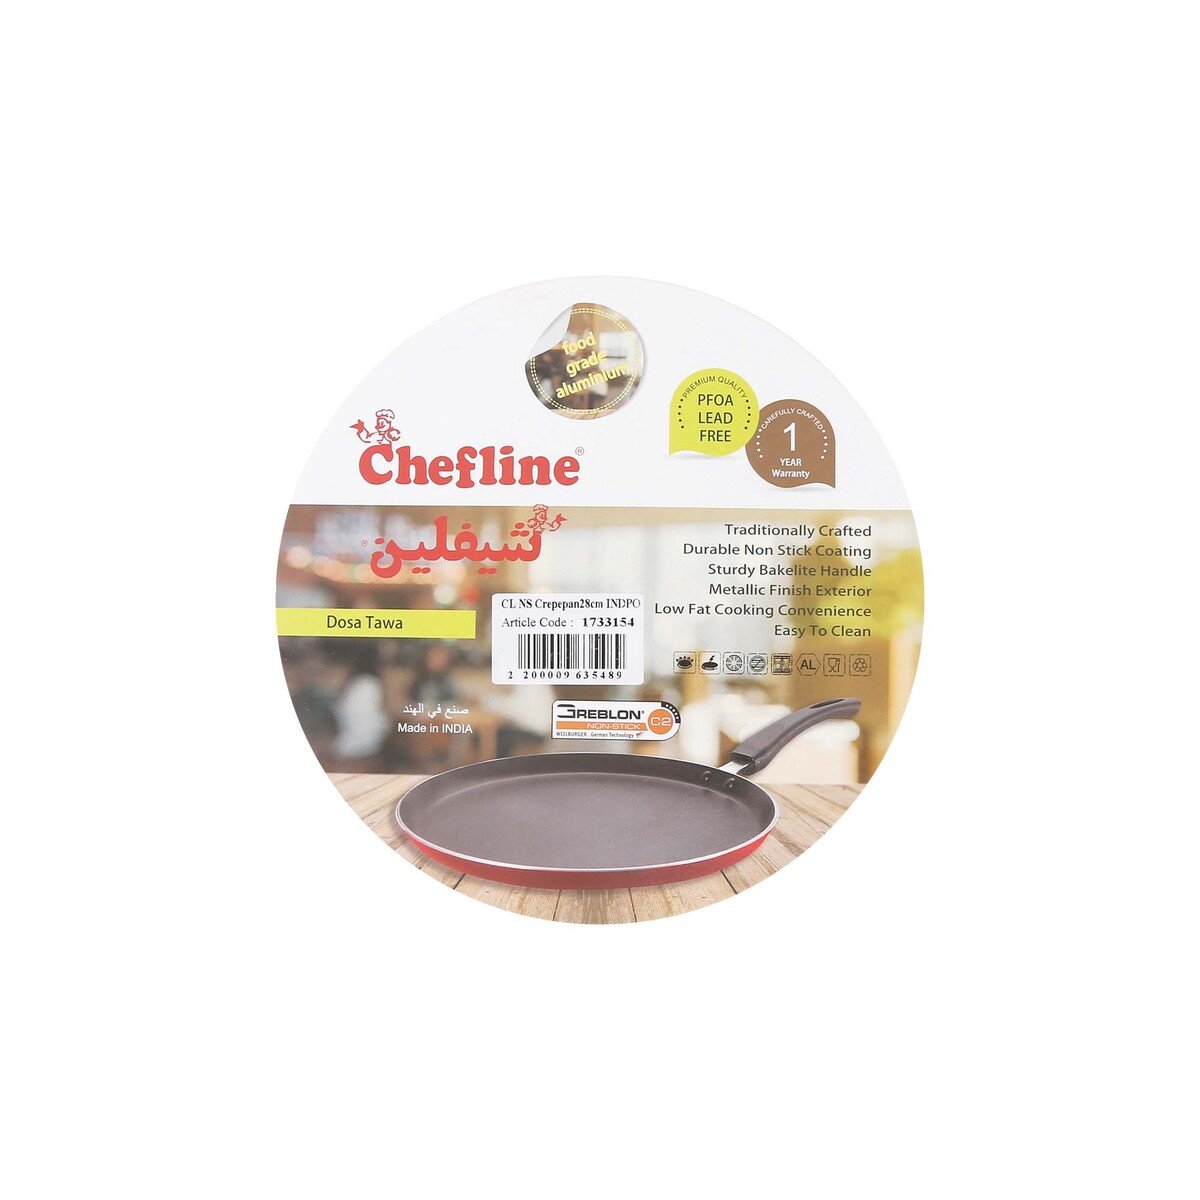 Chefline Aluminium Crepe Pan, 28 cm, INDPO